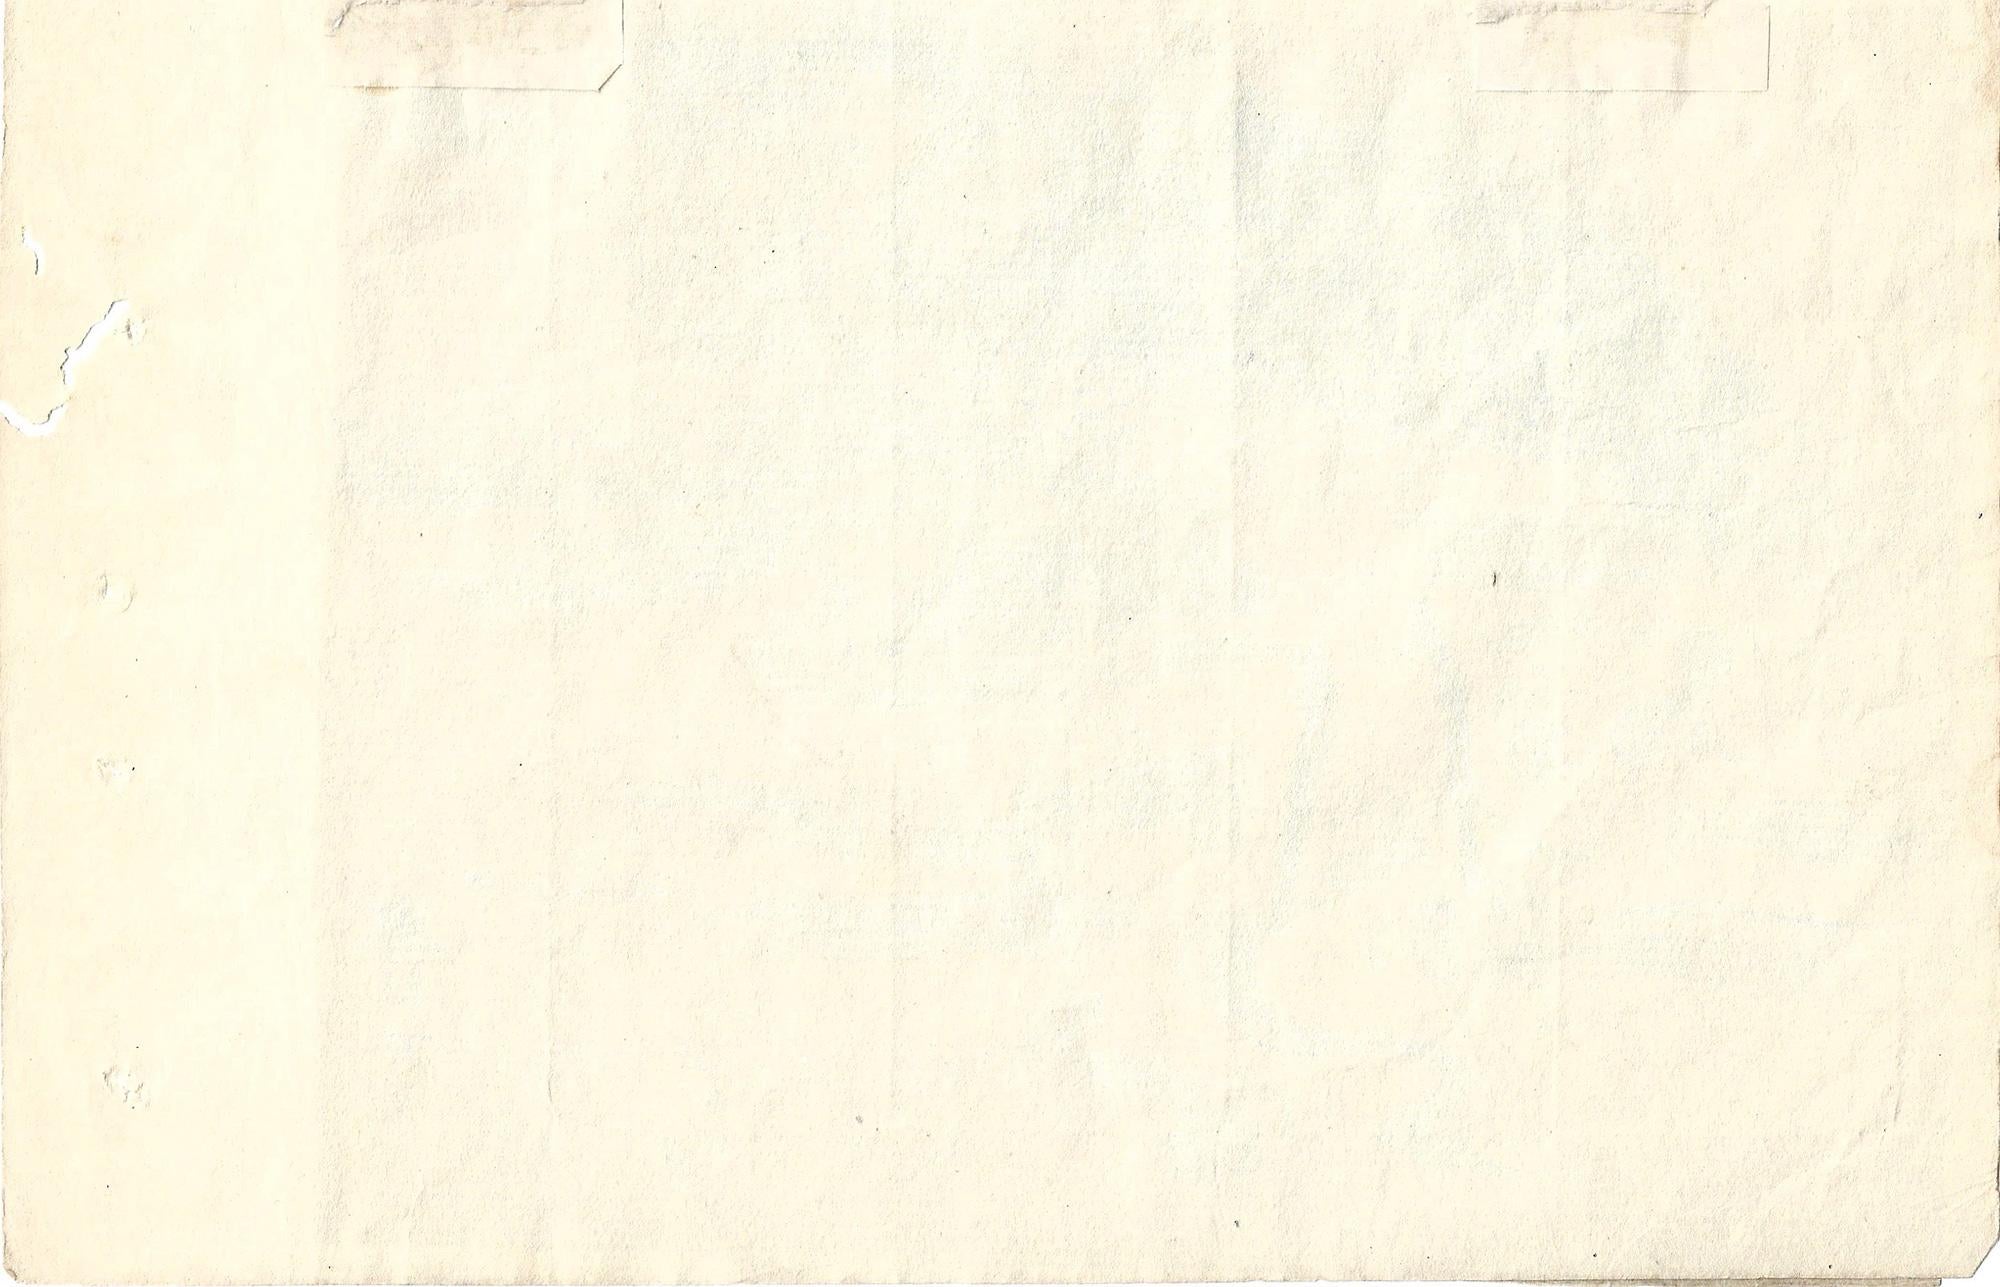 Encre et aquarelle sur papier Japon fibreux posé sur du papier vergé crème d'époque, 6 x 7 1/2 pouces (155 x 190 mm). Légères altérations et quelques dégâts causés par les insectes sur le support, la peinture elle-même reste complètement intacte.